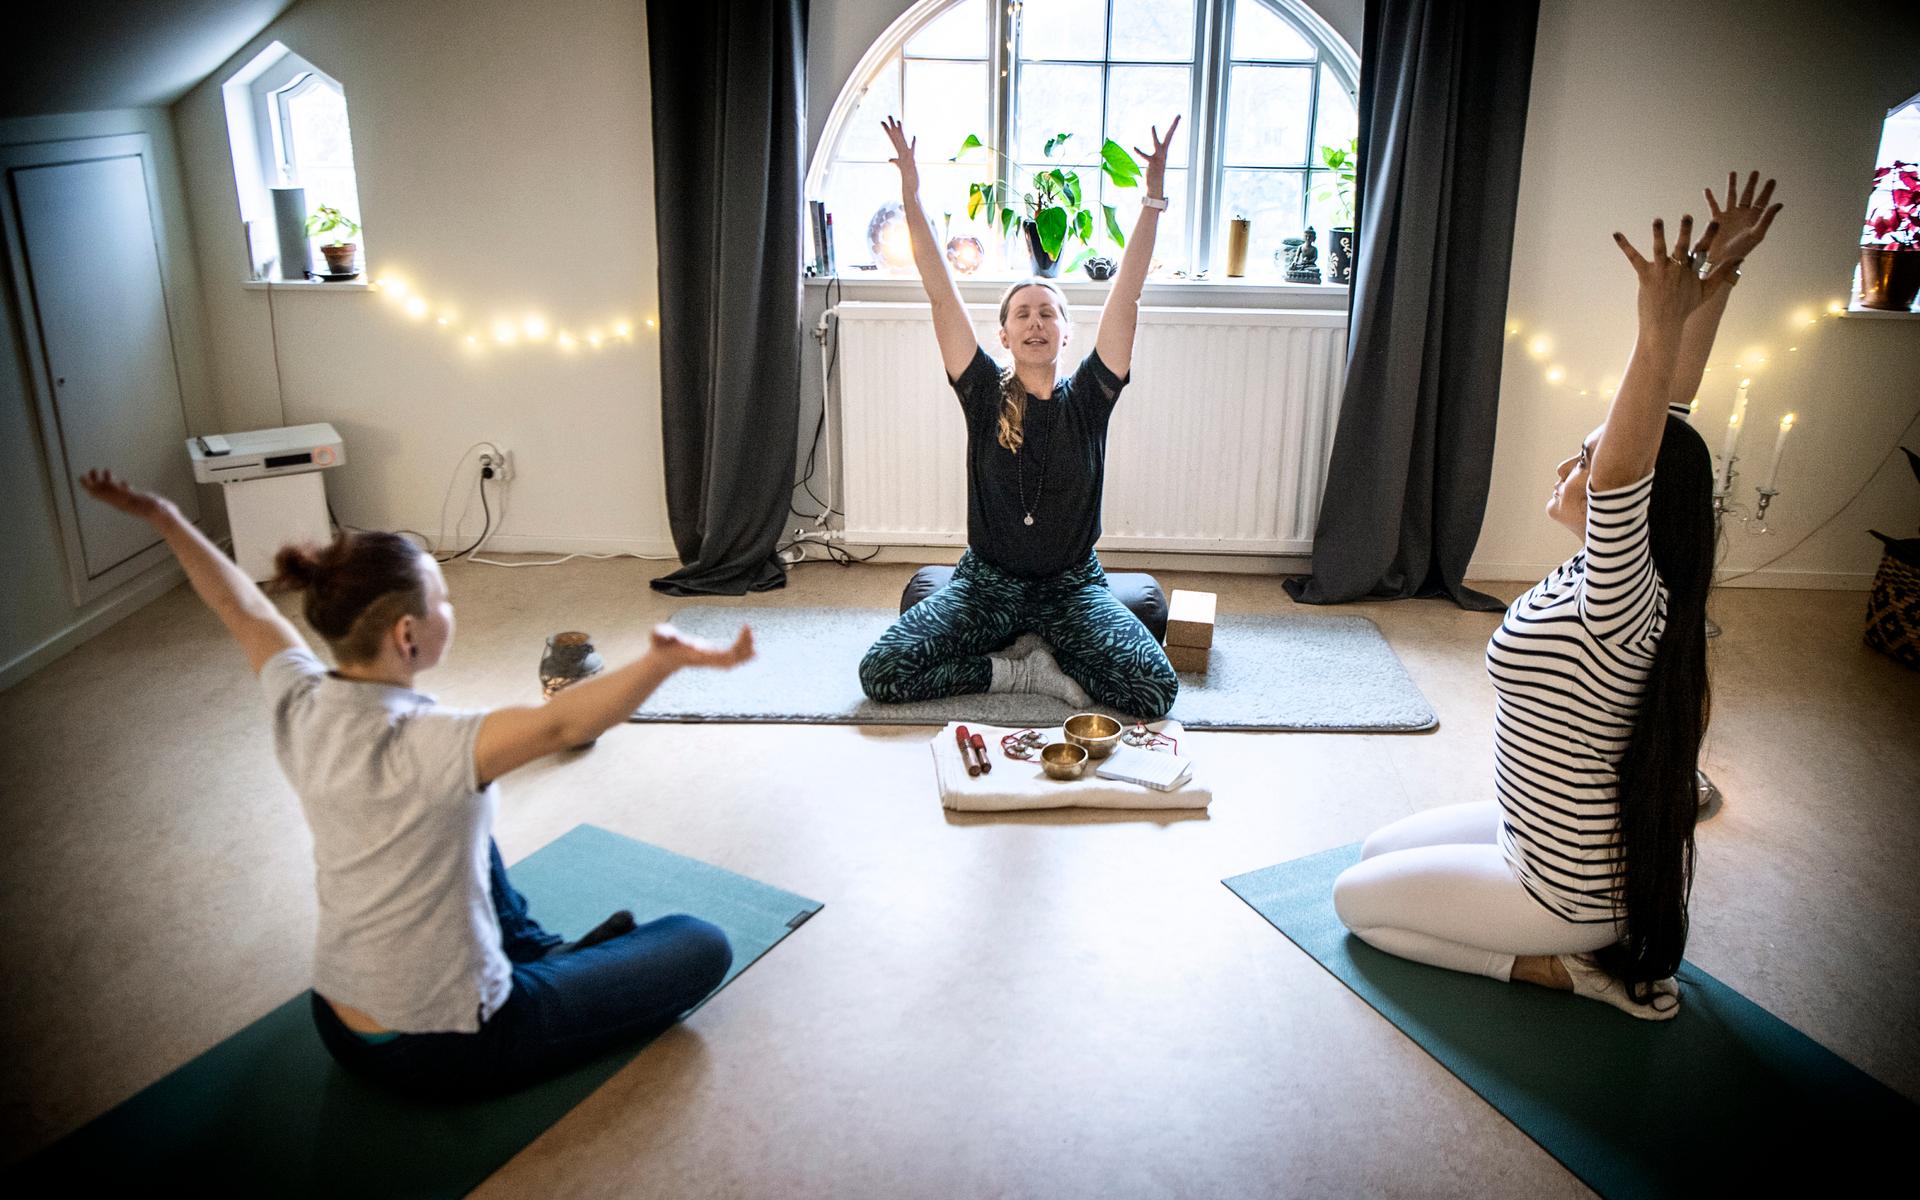 26 mars. Trädkronorna - tre kvinnor som öppnat verksamhet med yoga, massage, avslappning.Linn Widenberg, Tove Blomdahl och Anarkhan Kurbanova.